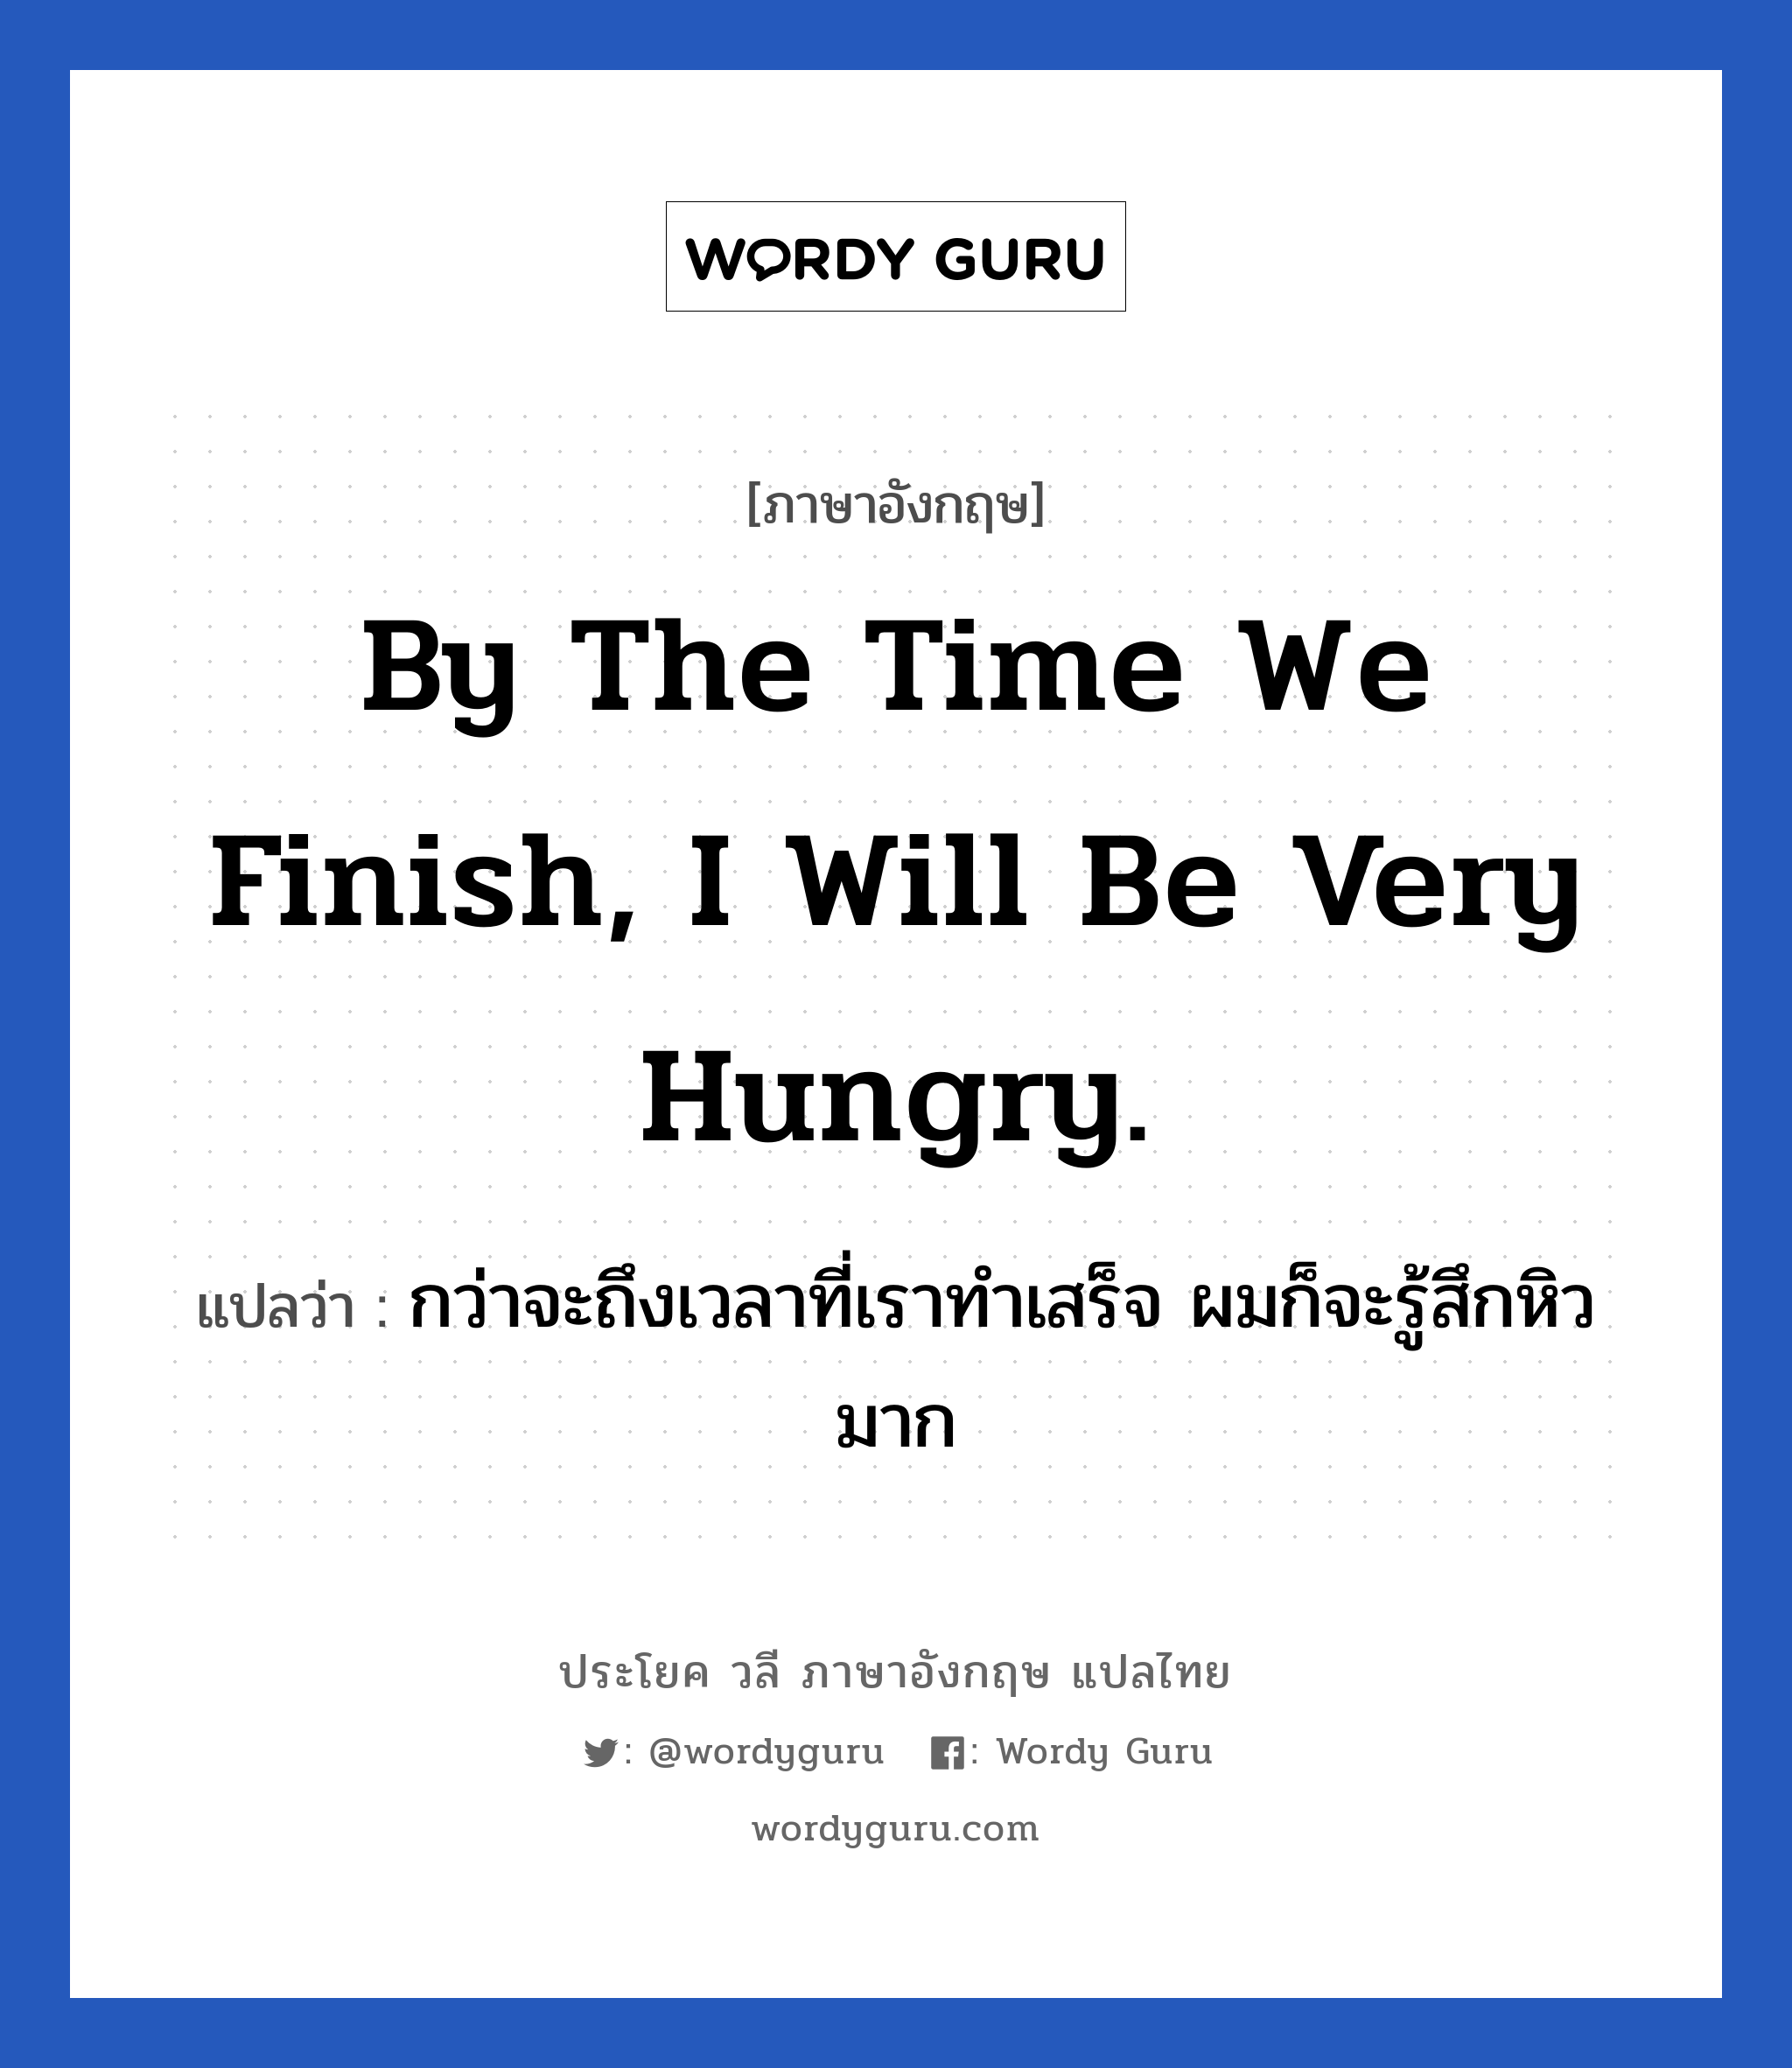 กว่าจะถึงเวลาที่เราทำเสร็จ ผมก็จะรู้สึกหิวมาก ภาษาอังกฤษ?, วลีภาษาอังกฤษ กว่าจะถึงเวลาที่เราทำเสร็จ ผมก็จะรู้สึกหิวมาก แปลว่า By the time we finish, I will be very hungry.